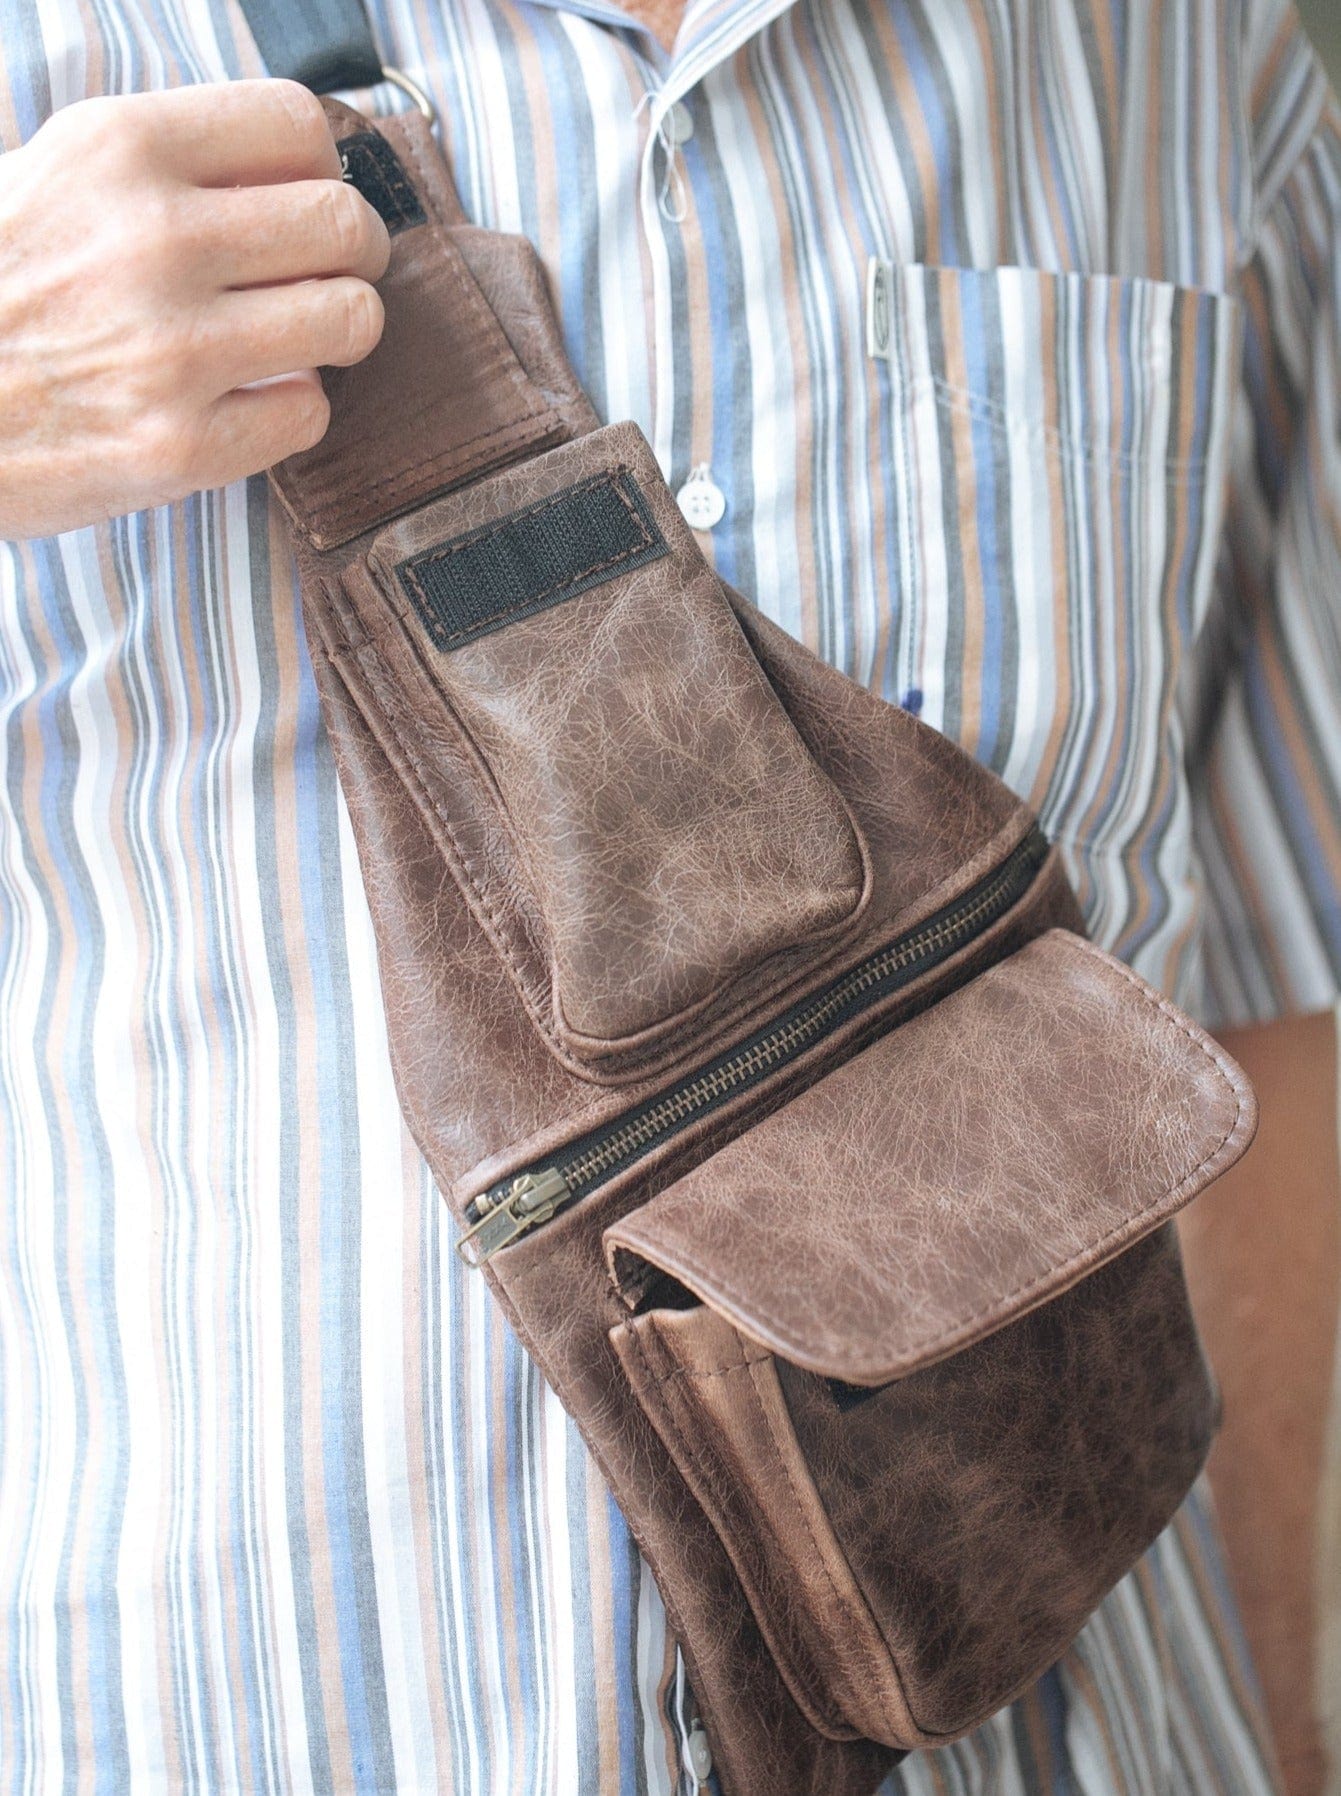 The Real McCaul Leathergoods Travel Bag Men’s Sling Bag Australian Made Australian Owned